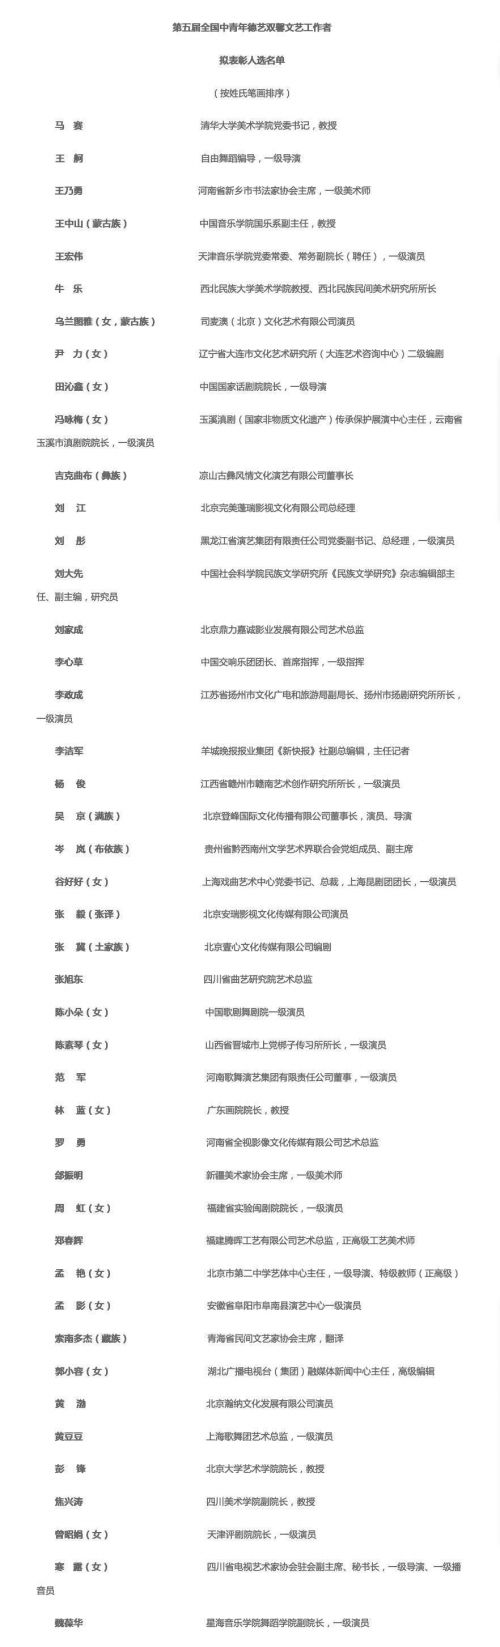 吴京、张译、黄渤入选第五届全国中青年德艺双馨文艺工作者